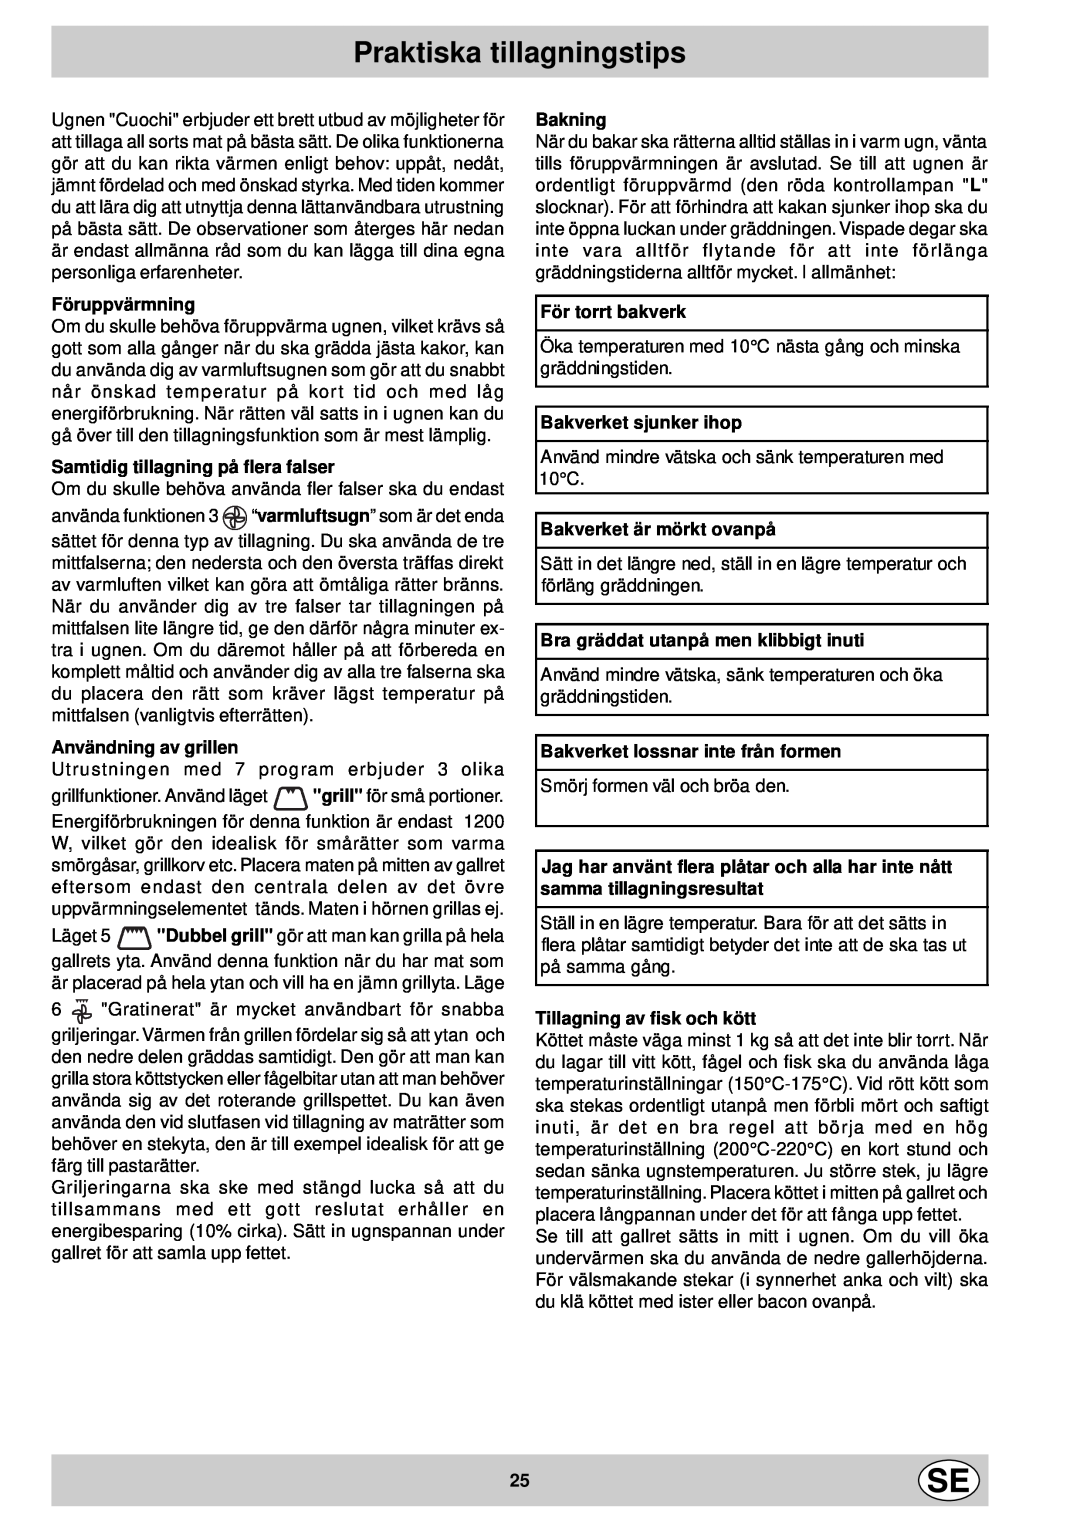 Indesit FM 37K IX DK manual Praktiska tillagningstips, Bakning, Föruppvärmning, Samtidig tillagning på flera falser 